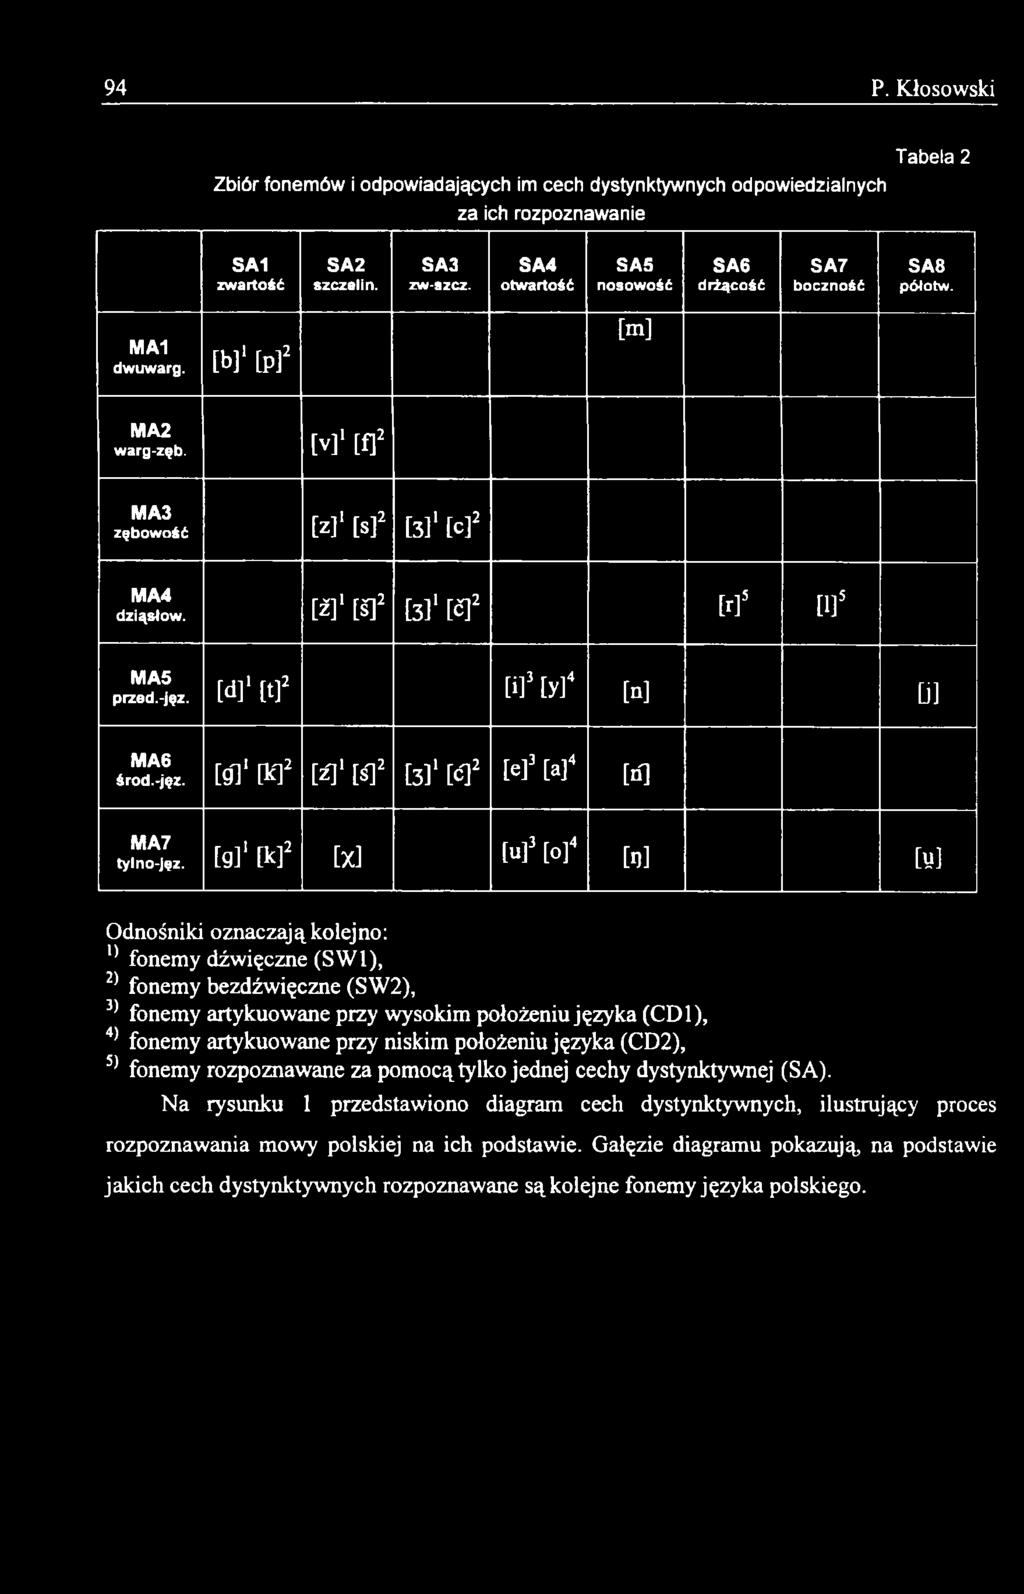 (CDI), 4) fonemy artykuowane przy niskim położeniu języka (CD2), 5) fonemy rozpoznawane za pomocą tylko jednej cechy dystynktywnej (SA).